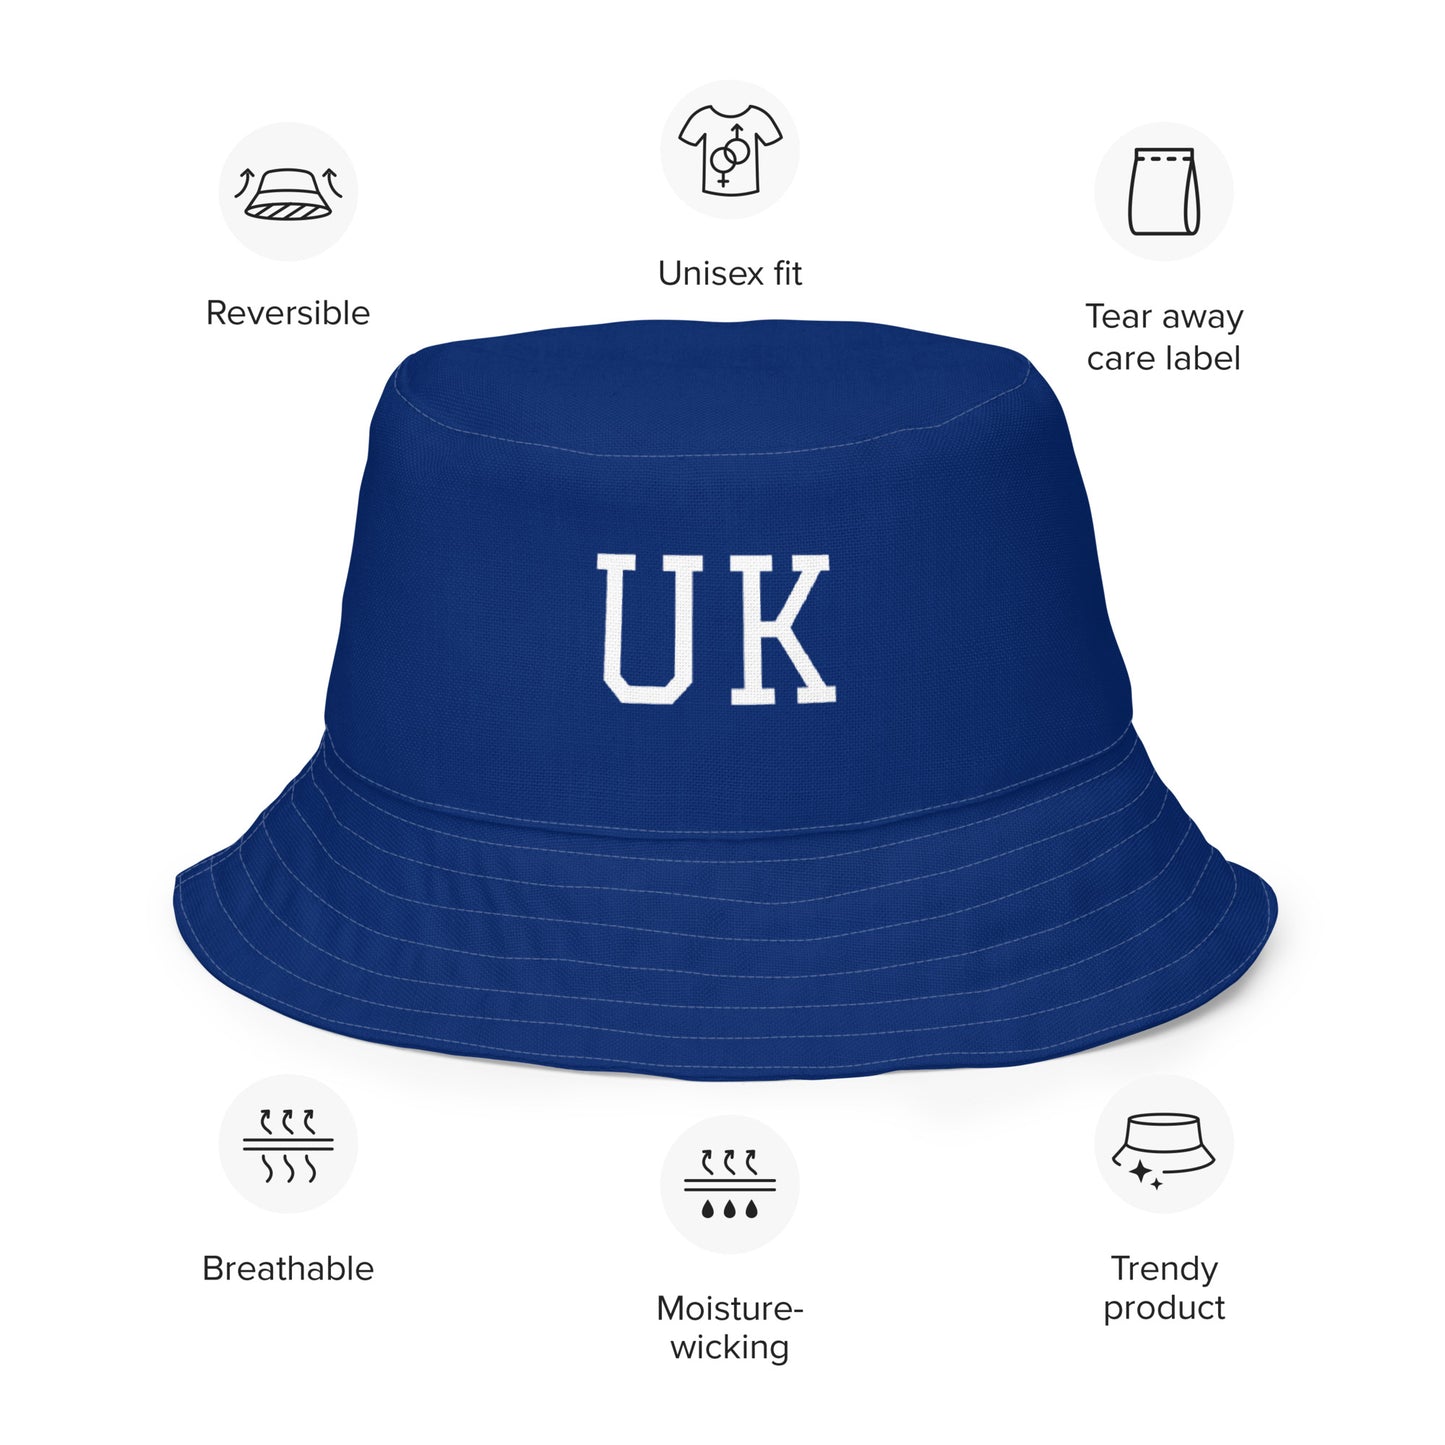 Sombrero Union Jack / Sombrero del Reino Unido / Sombrero de cubo reversible